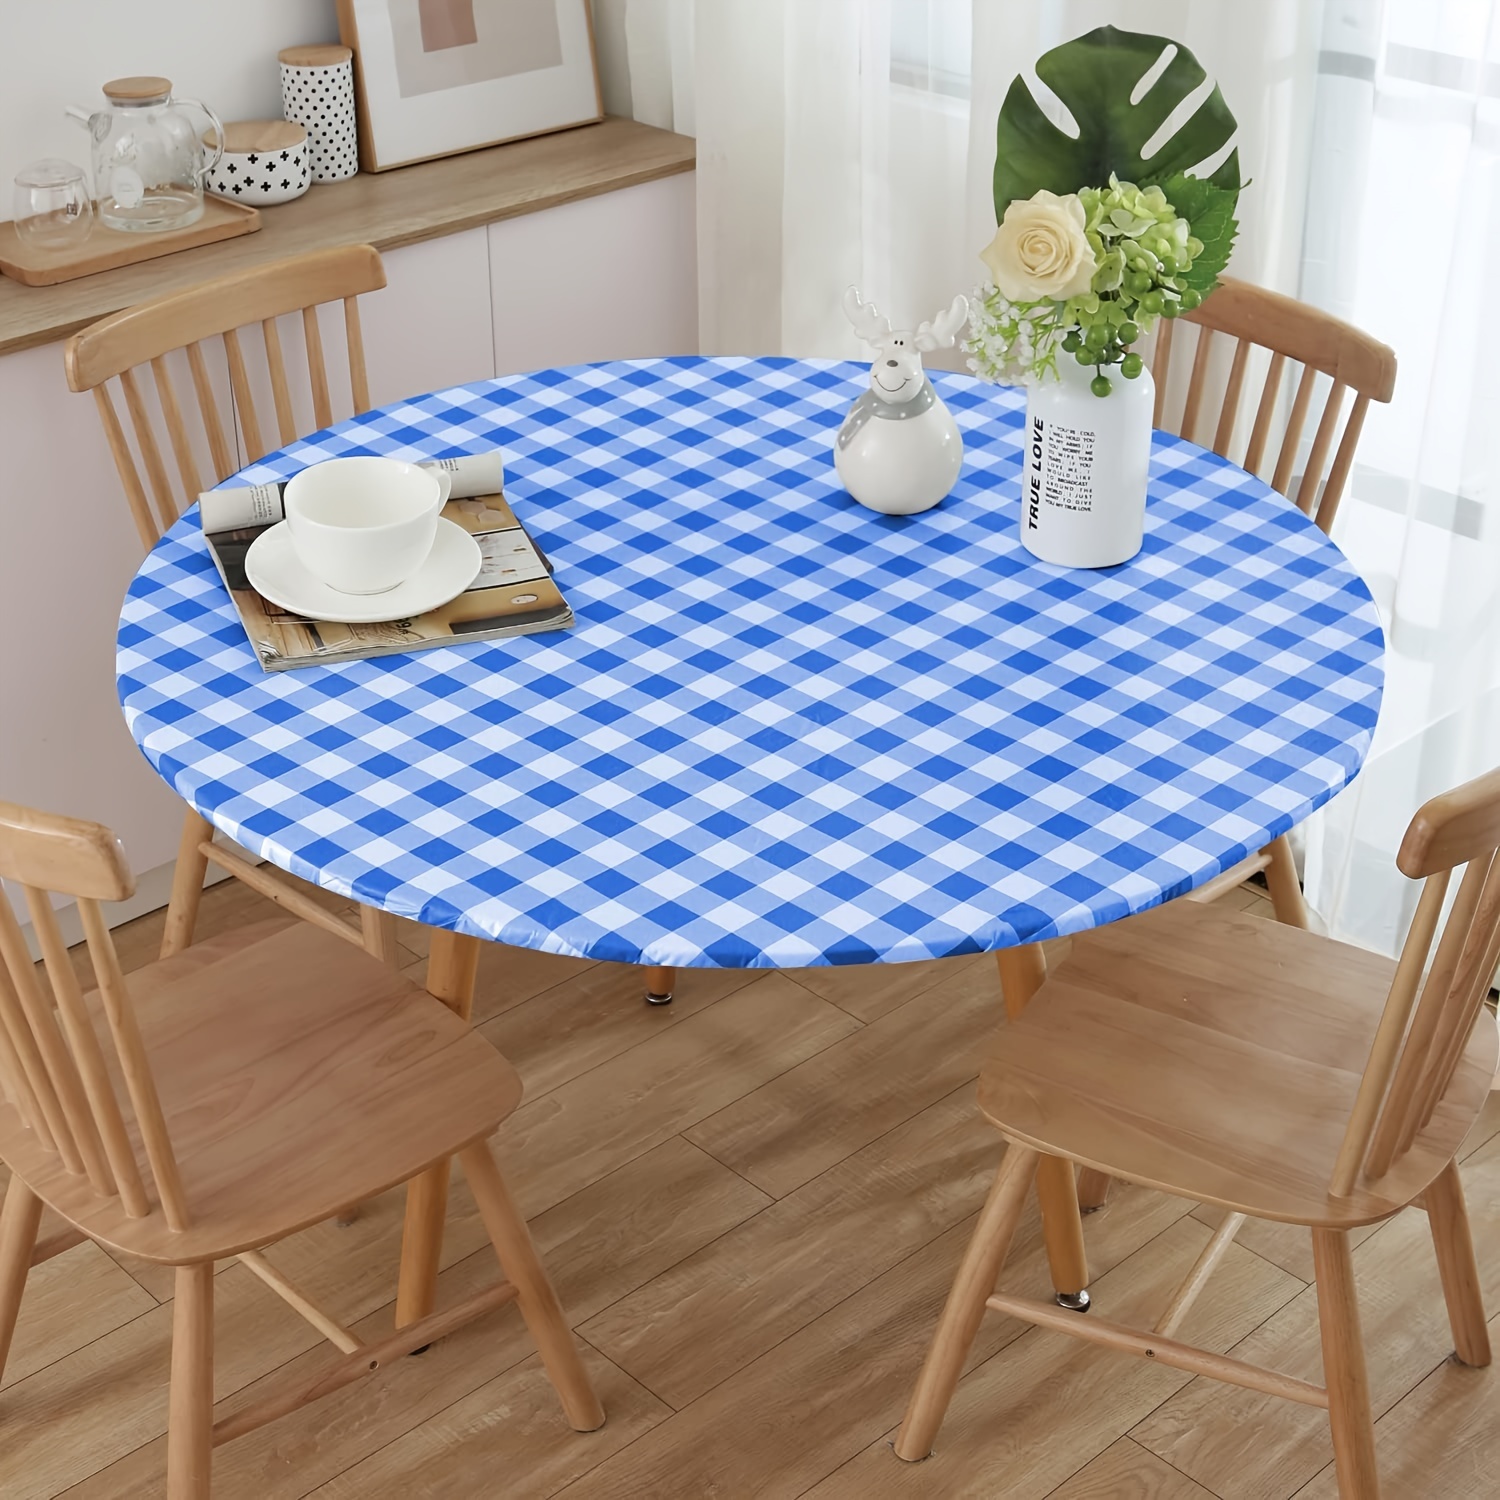  Rollo de mantel de plástico blanco que protege la mesa de  derrames, cubremesa desechable con cortador seguro fácil de usar para  fiestas, picnic, se adapta a mesas de 8 a 10